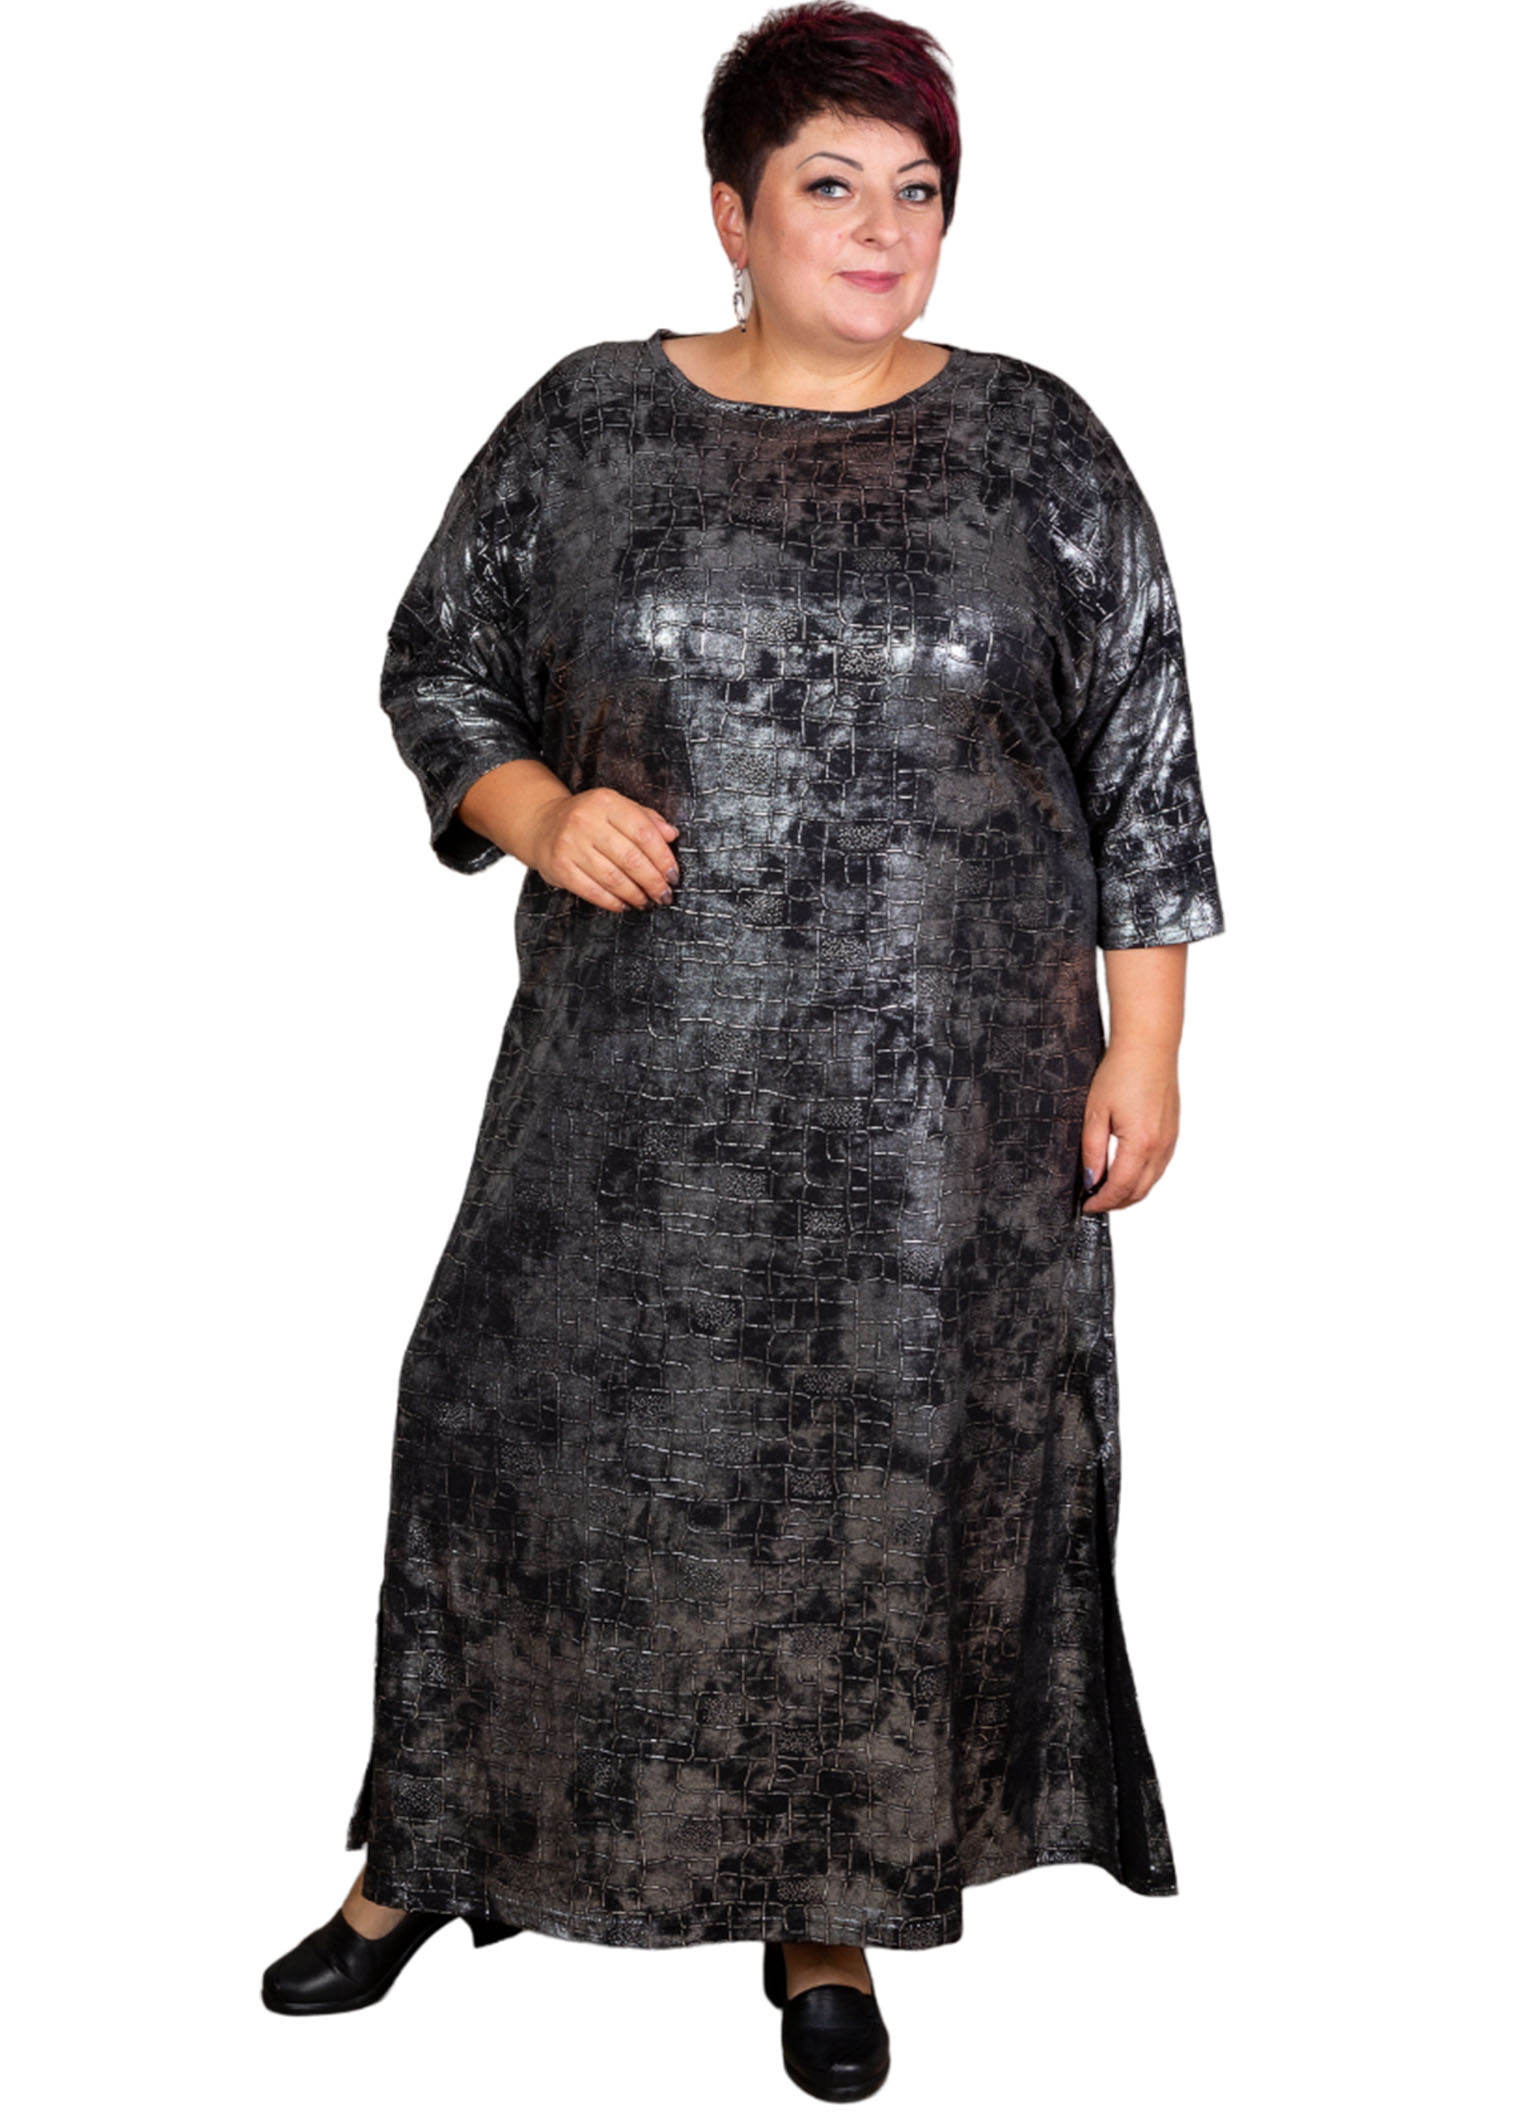 Платье женское Полное Счастье ОК-ПЛ-23-0310 черное 52 RU